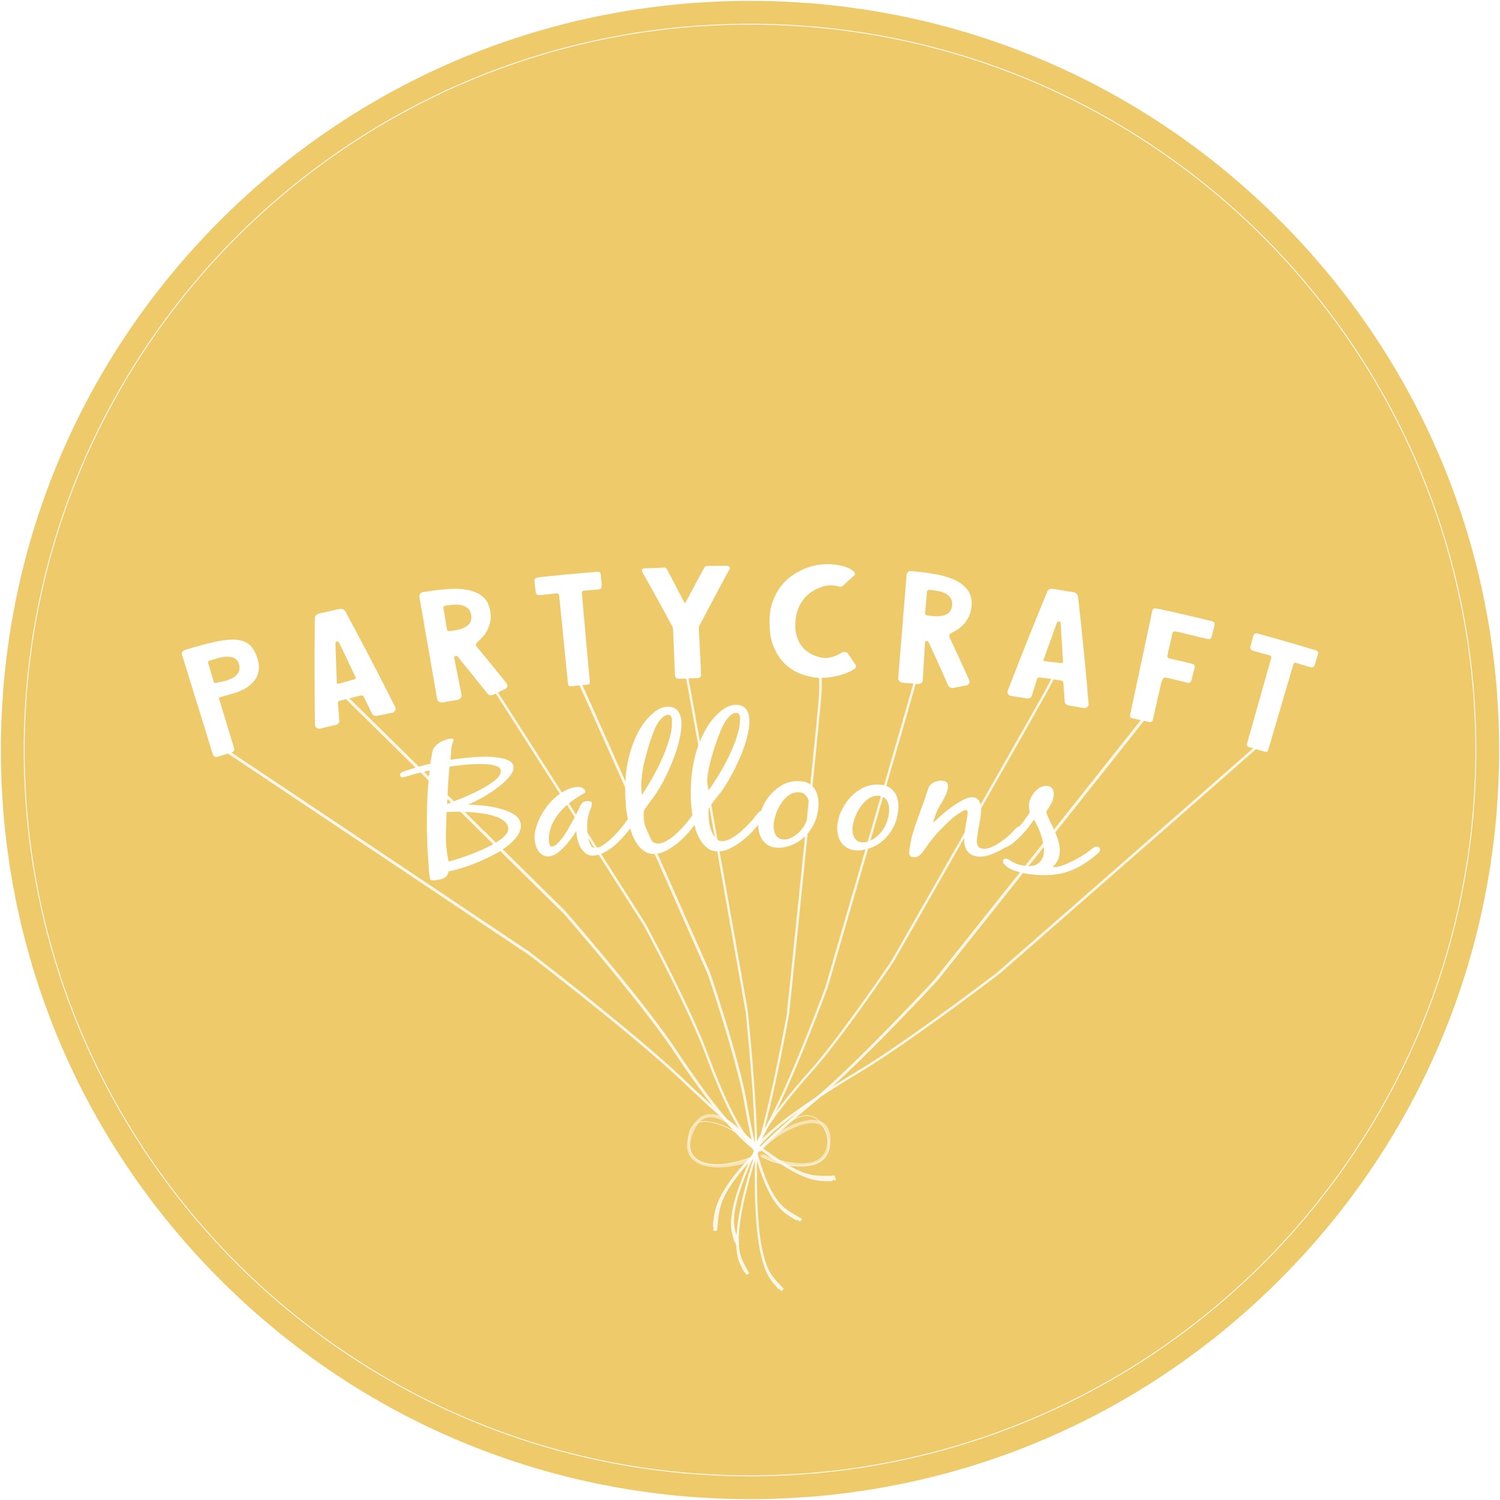 Partycraft Balloons